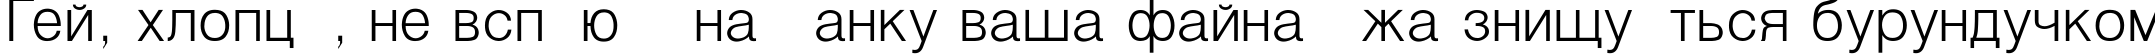 Пример написания шрифтом Helvetica_Light-Normal текста на украинском